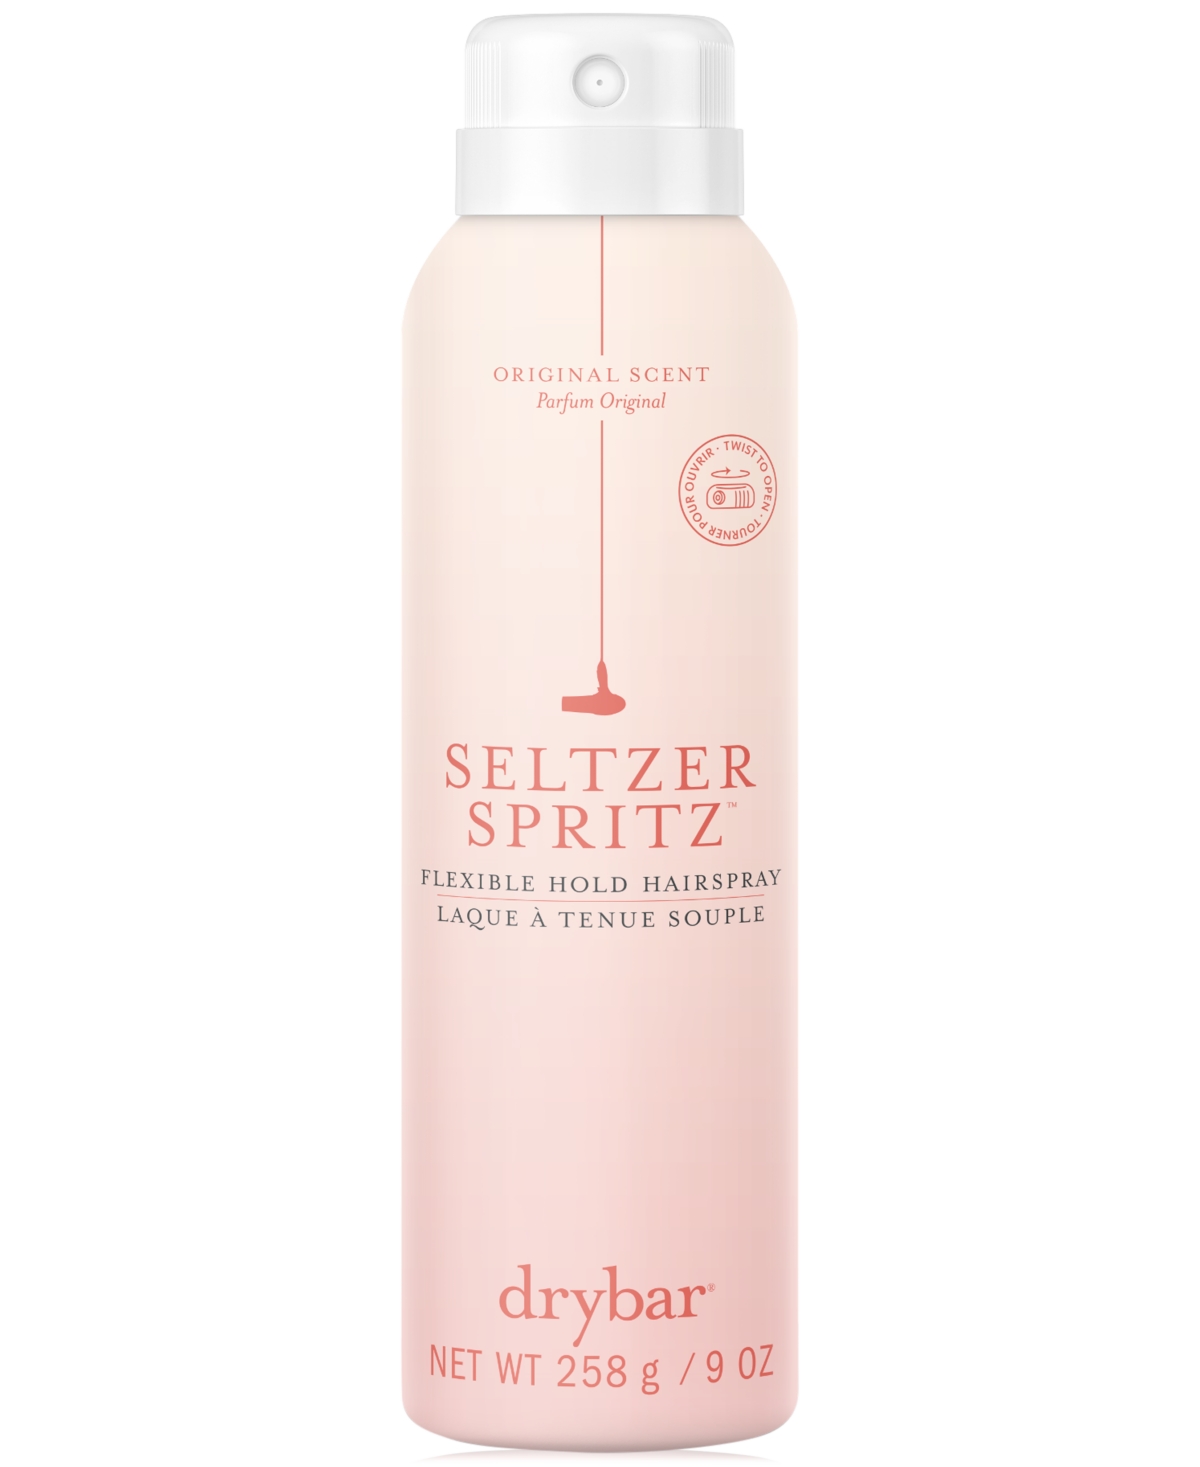 Drybar Seltzer Spritz Flexible Hold Hairspray, 9 Oz. In No Color